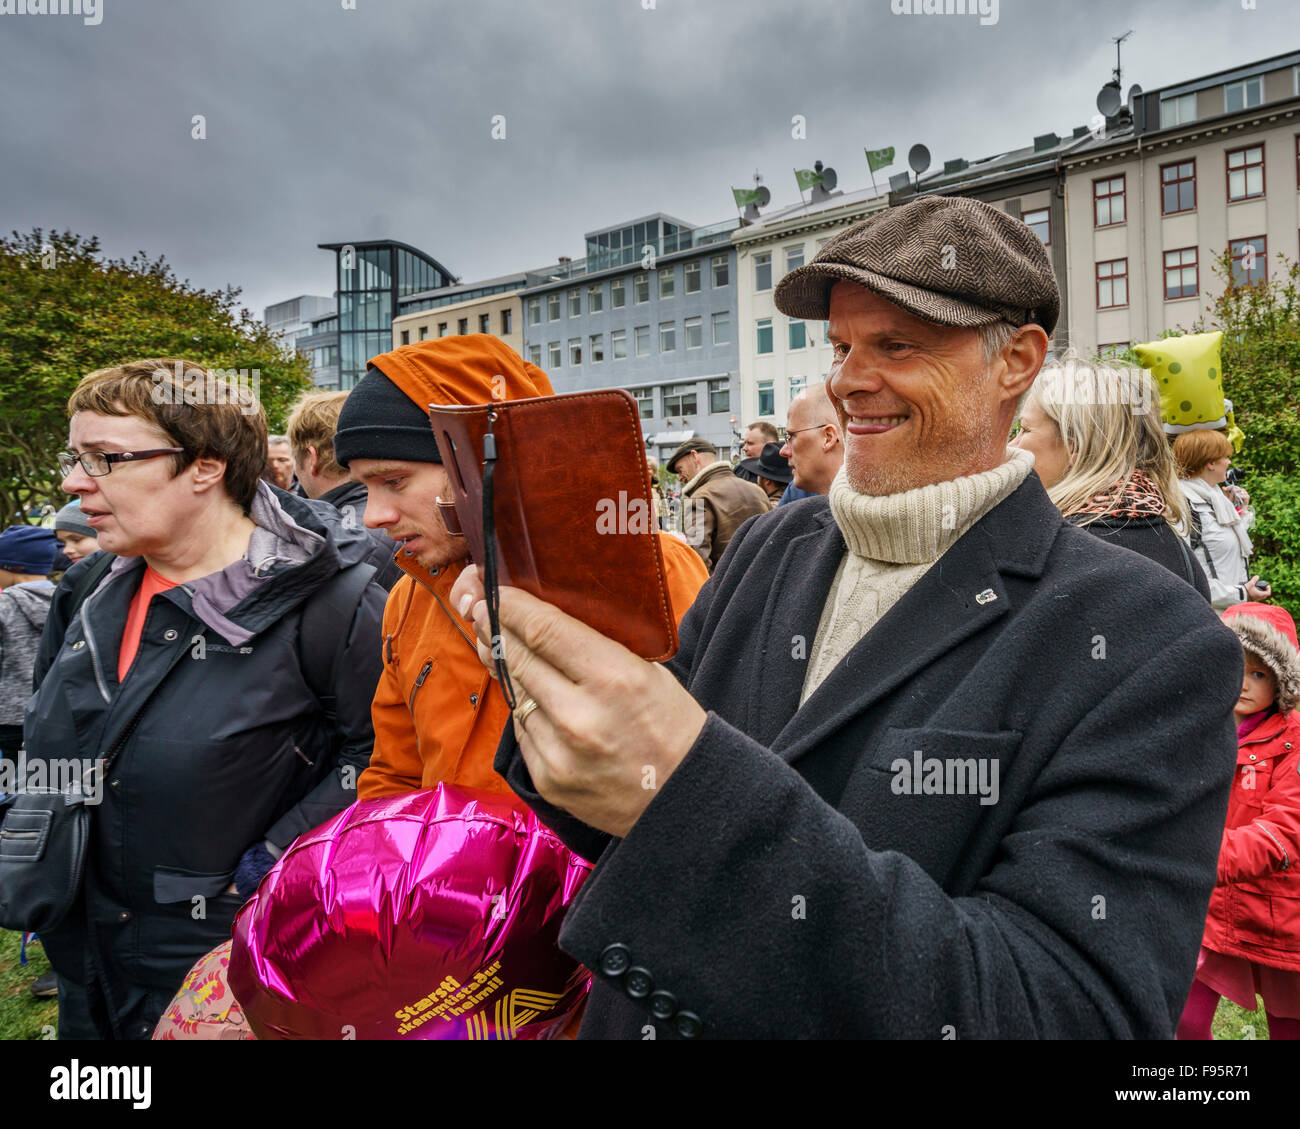 El hombre tomando fotos de gente dando discursos durante el día de la independencia de Islandia, 17 de junio de 2015, Reykjavik, Iceland Foto de stock